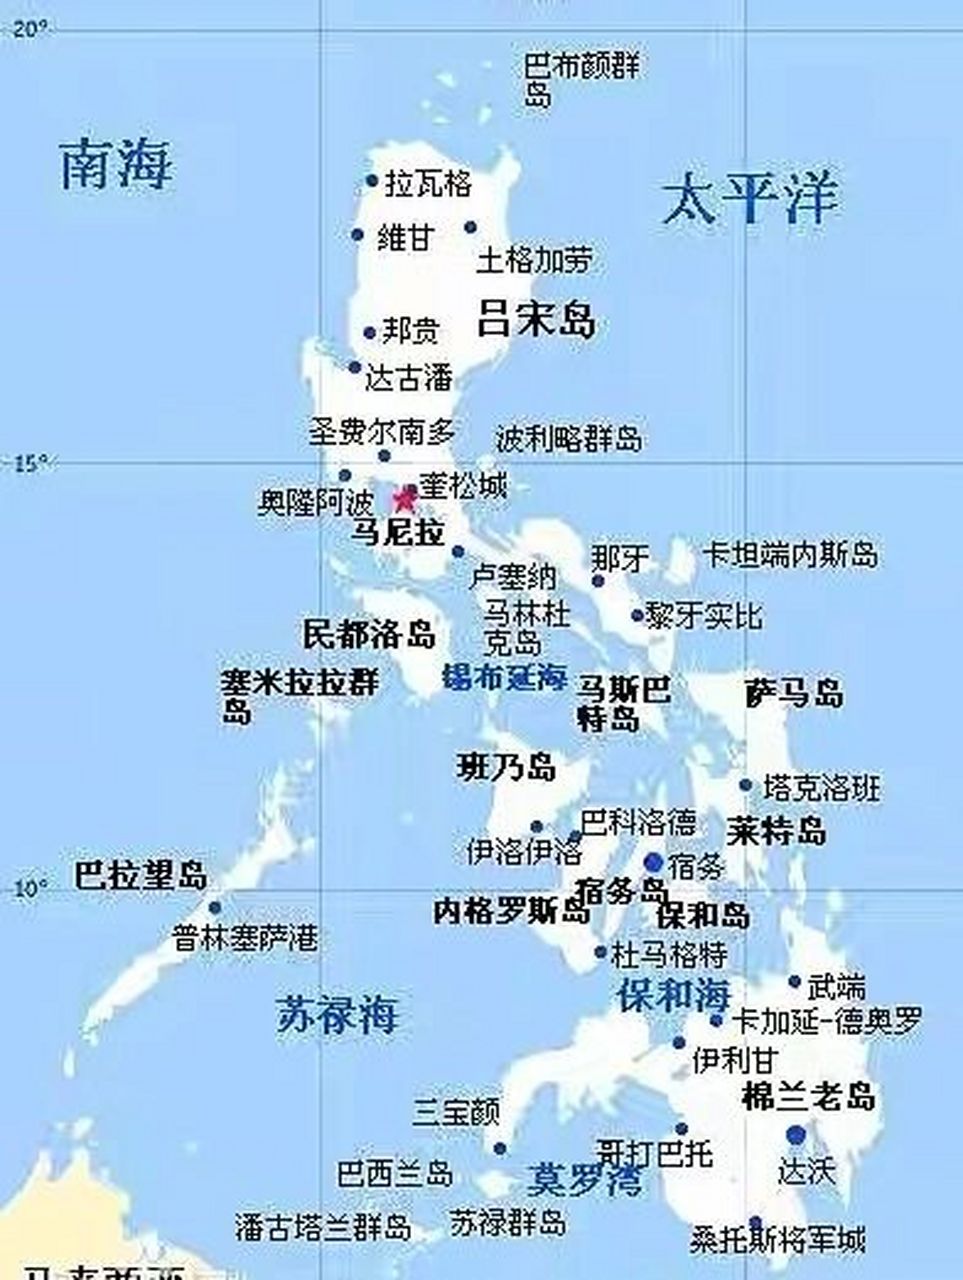 棉兰老岛:你不知道的菲律宾第二大岛,世界  棉兰老岛位于菲律宾群岛的